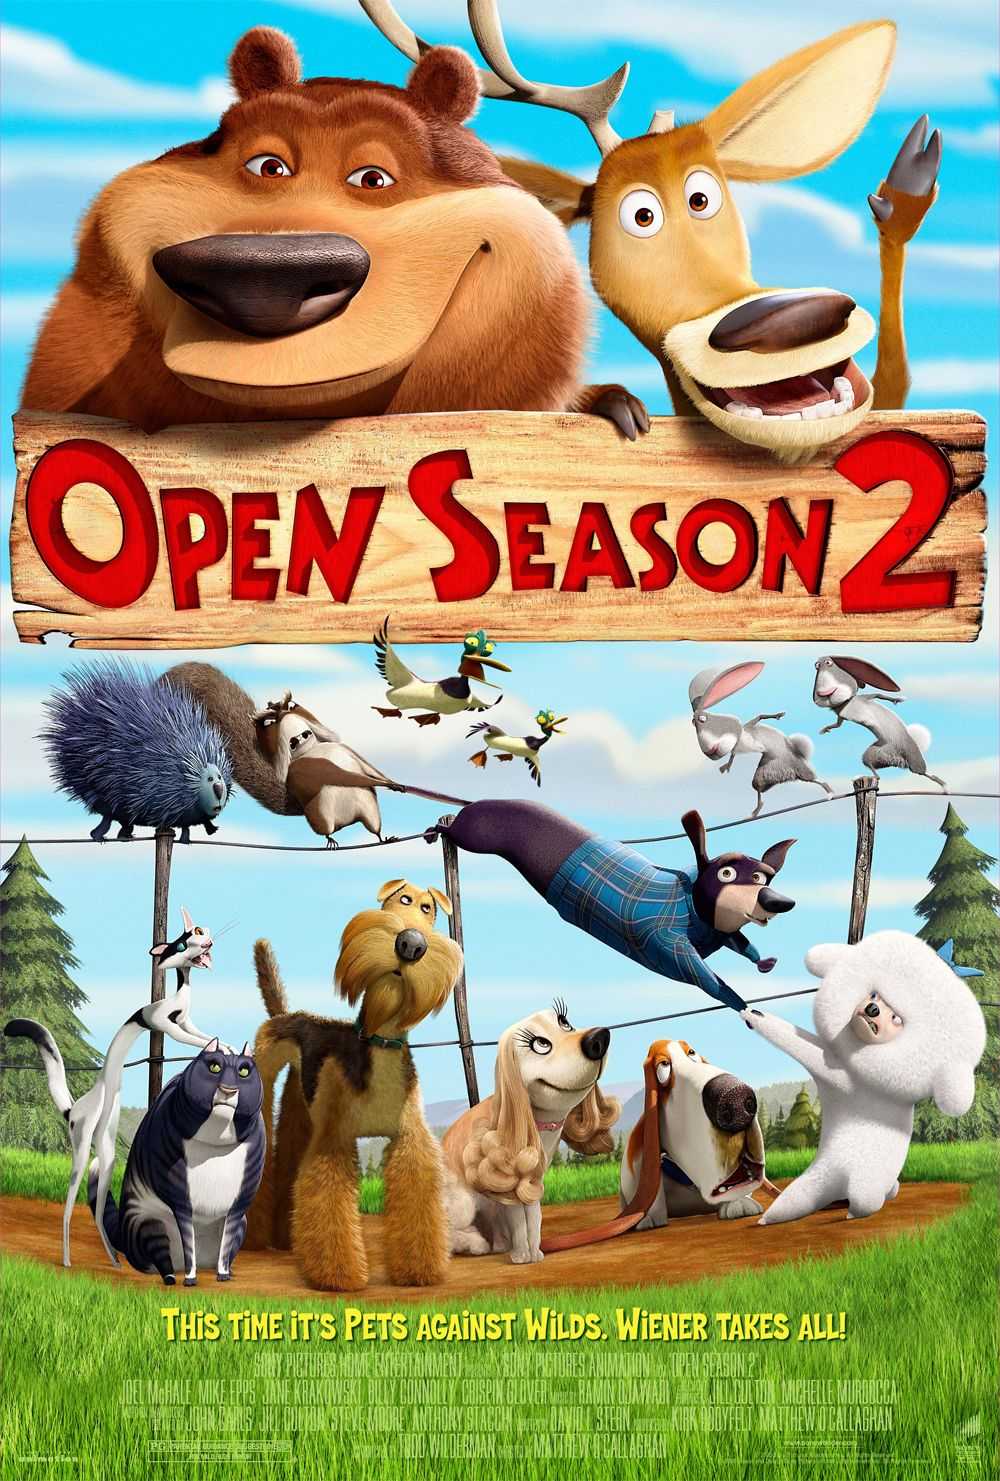 انیمیشن فصل شکار 2 Open Season 2 2008 با دوبله فارسی